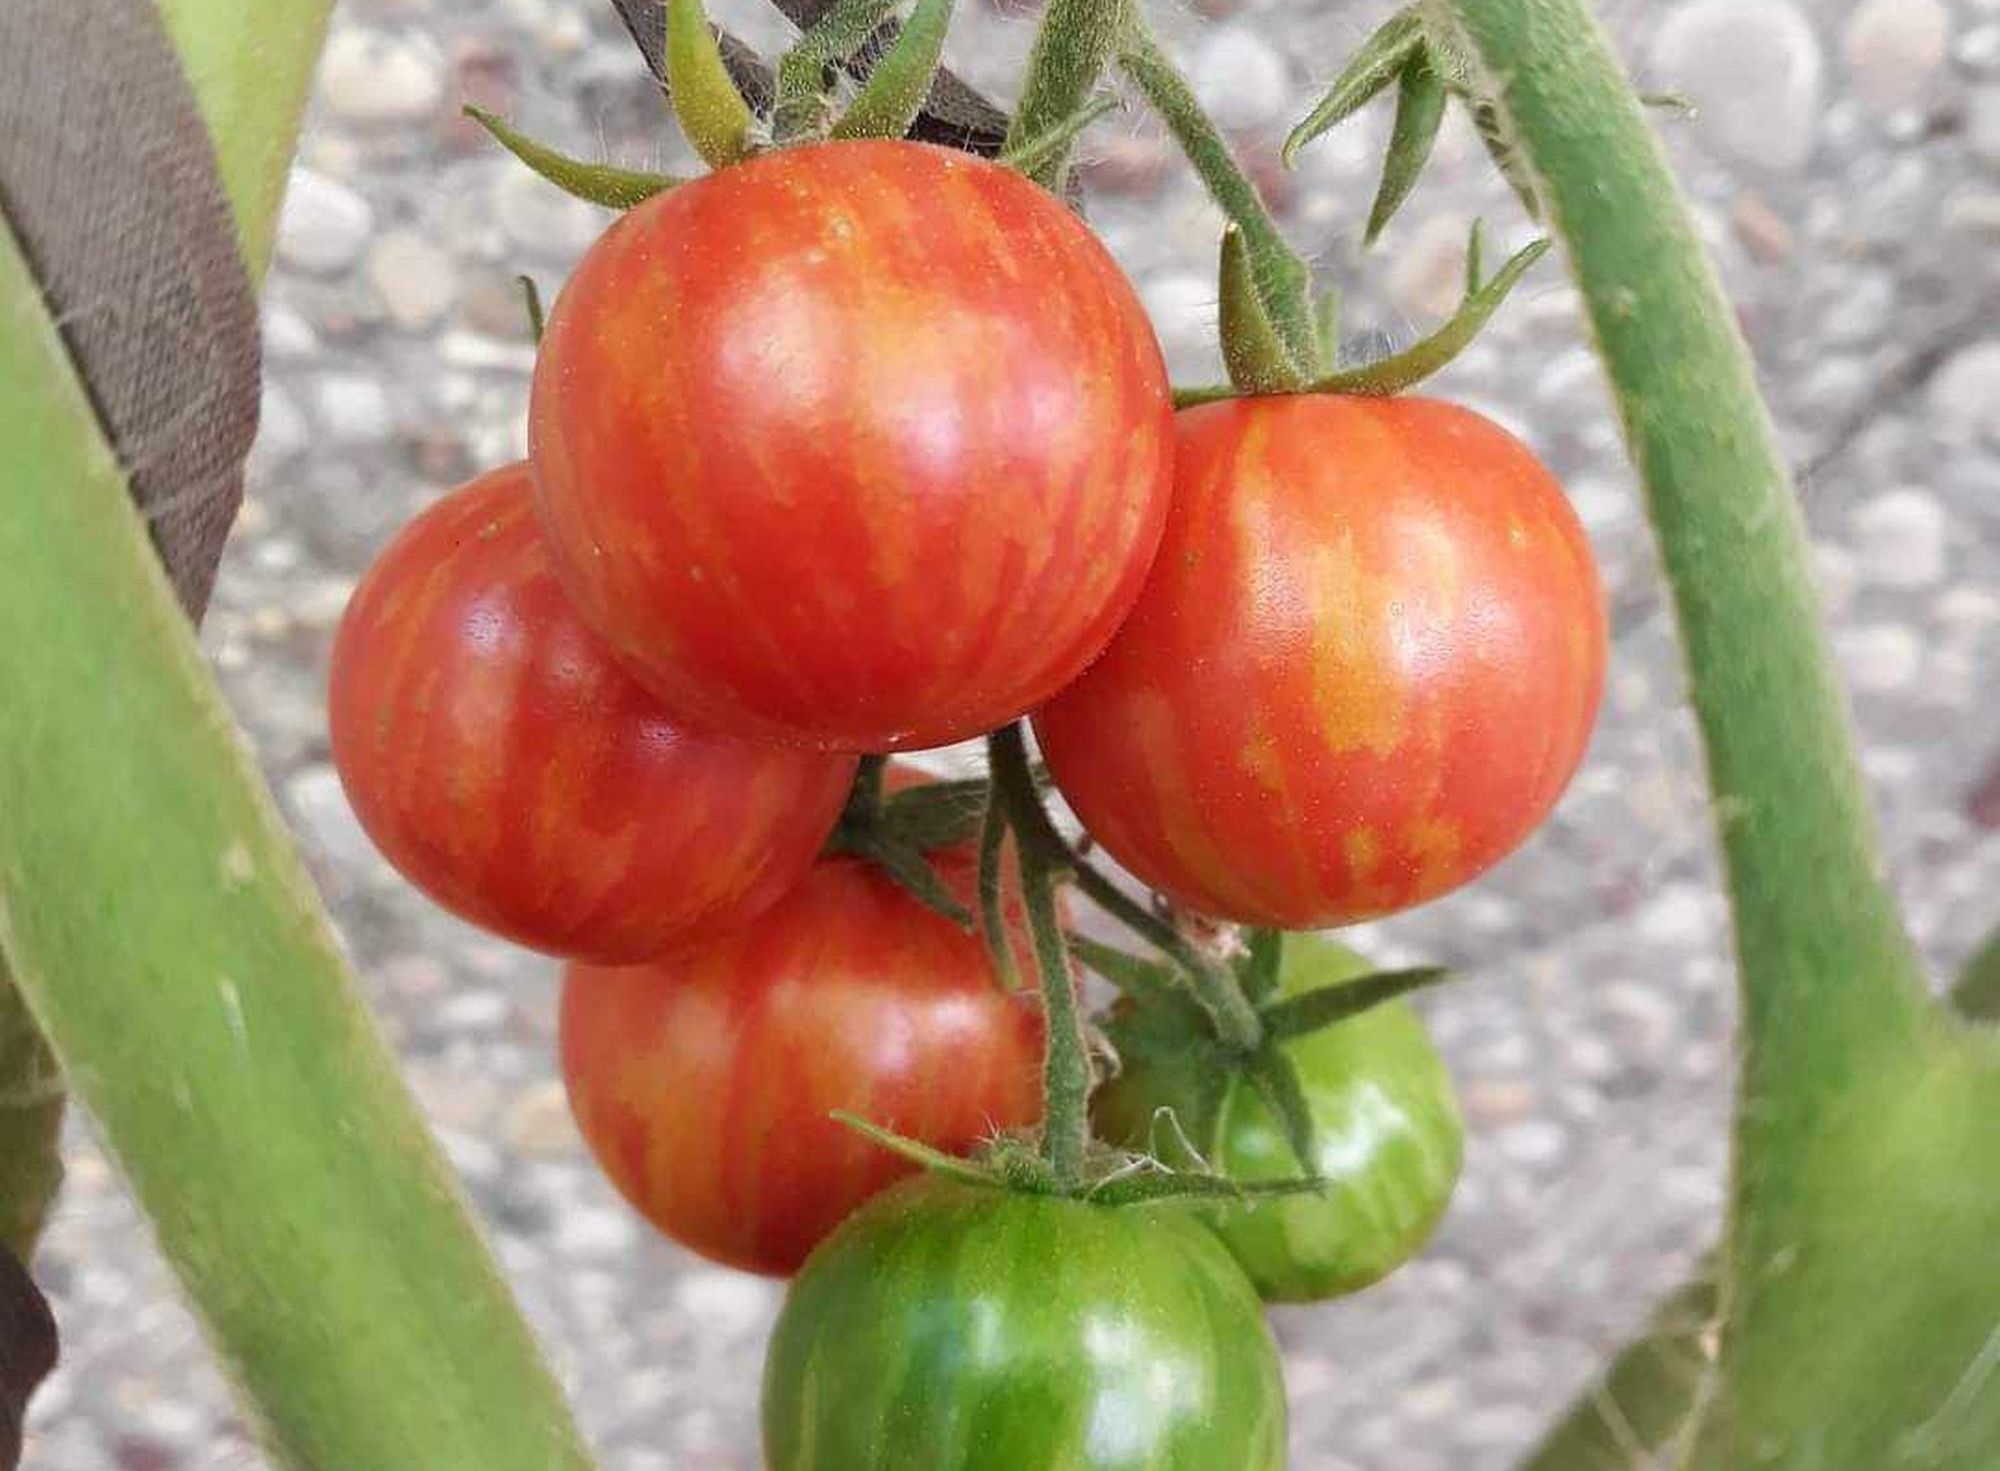 Vaišės iš balkono – didžiavaisiai pomidorai ir kepti cukinijų žiedai